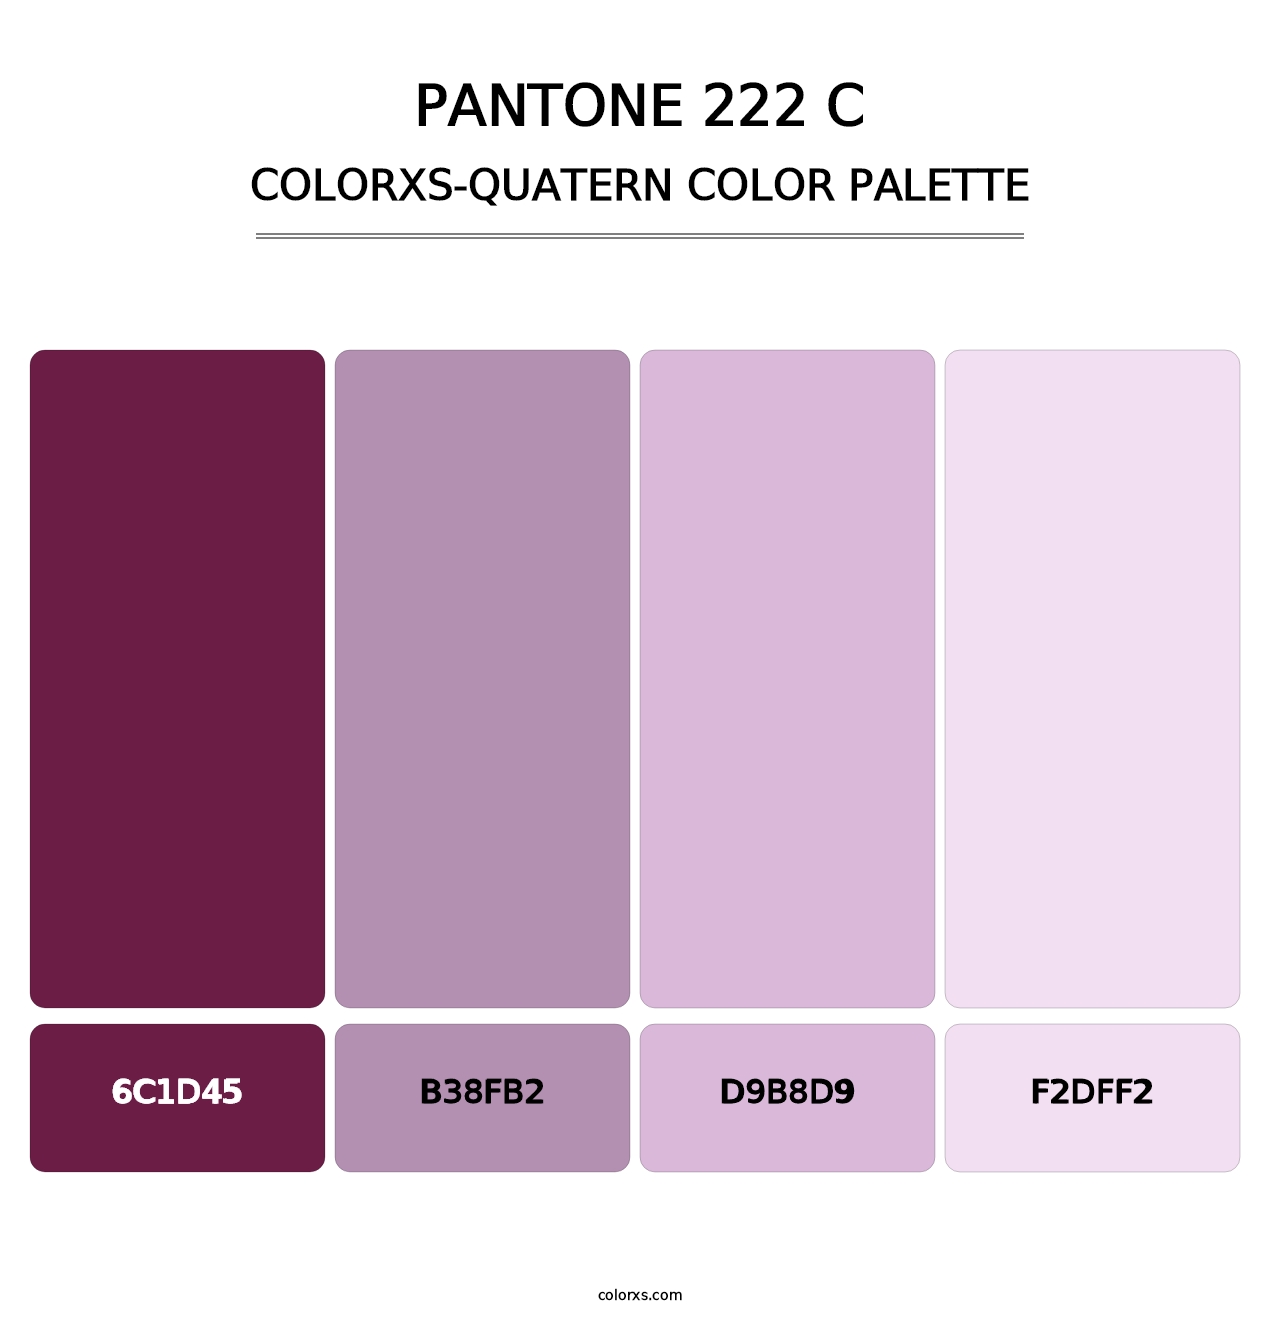 PANTONE 222 C - Colorxs Quatern Palette